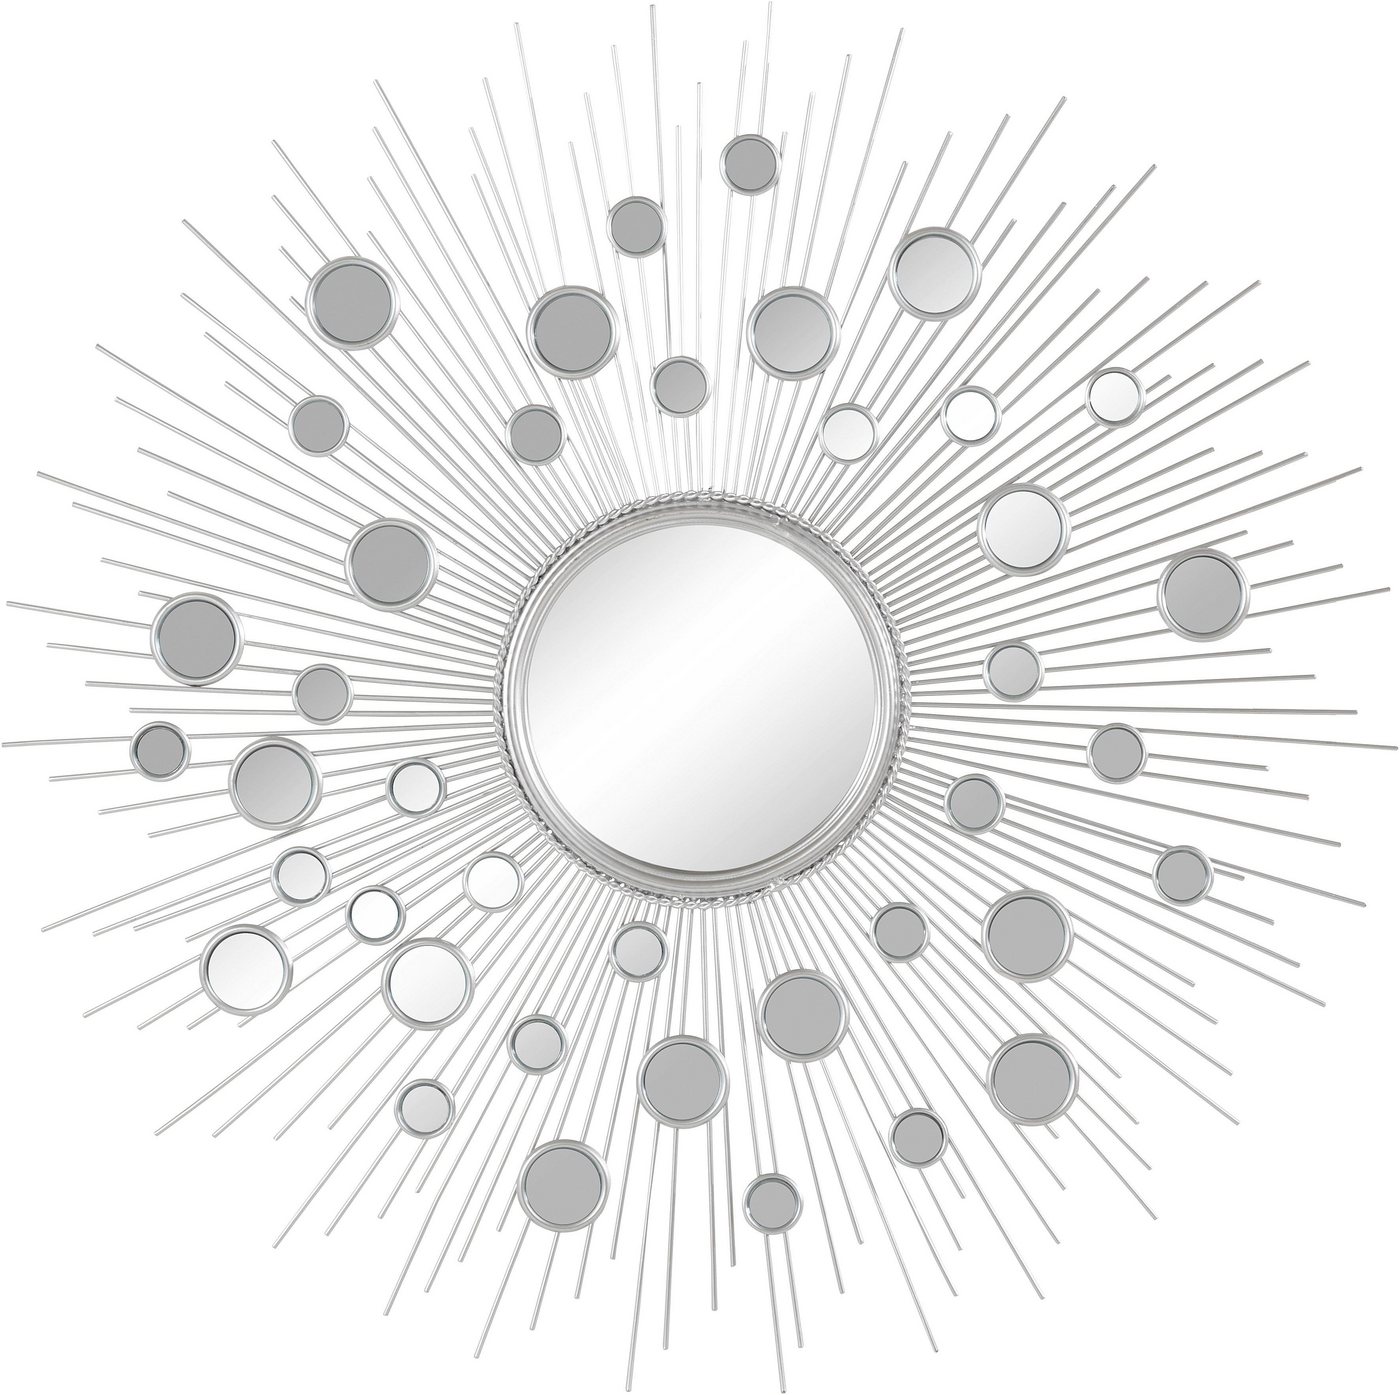 Leonique Dekospiegel »Spiegel, silber«, Wandspiegel, Sonne, rund, Ø 81 cm, mit dekorativen Spiegelelementen, Rahmen aus Metall, dekorativ im Wohnzimmer & Schlafzimmer-HomeTrends